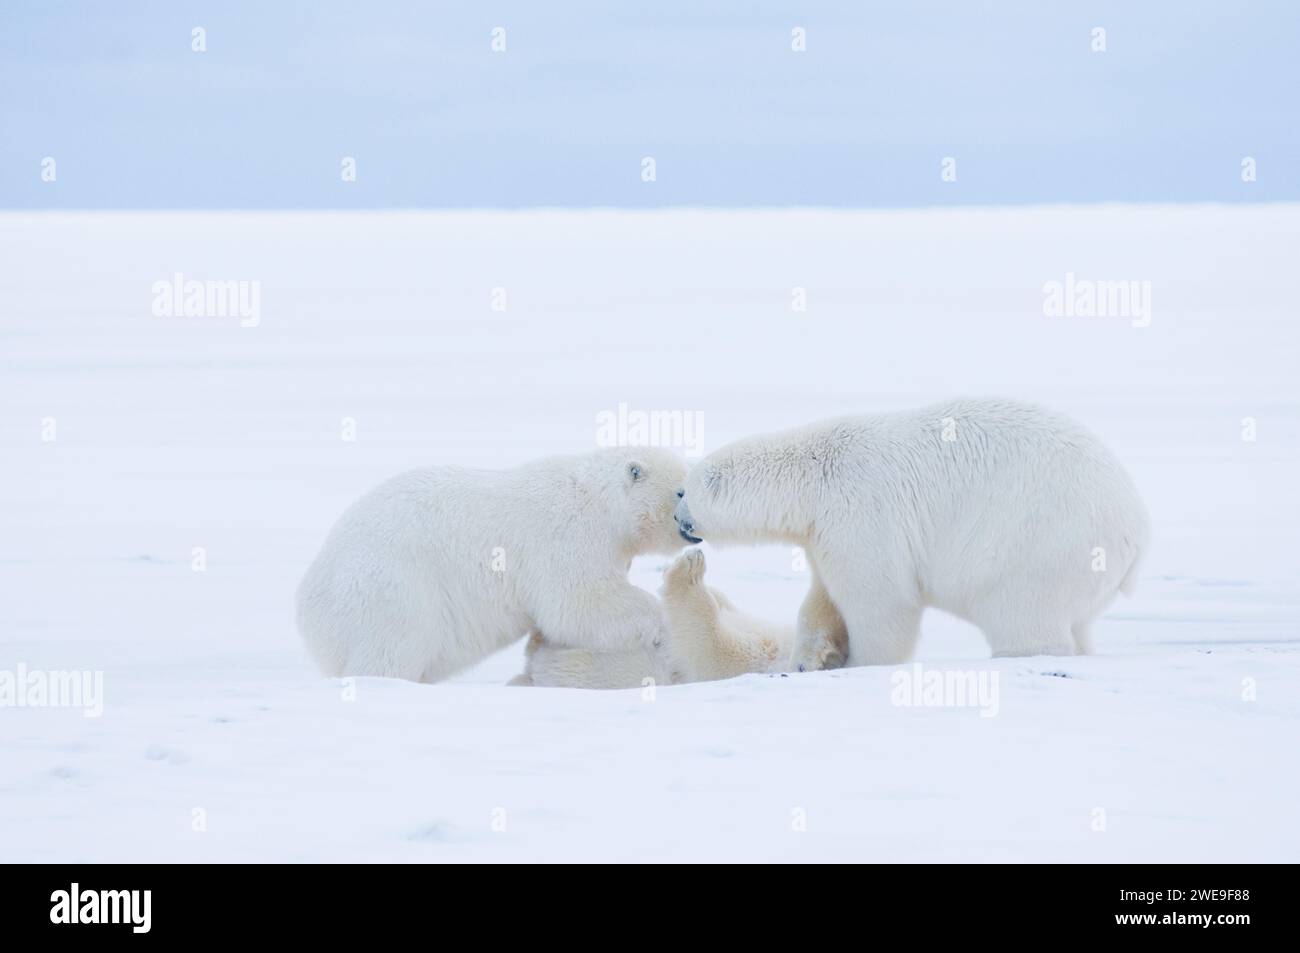 Les ours polaires Ursus maritimus les oursons jouant et voyageant à travers la banquise nouvellement formée pendant l'automne gelent 1002 ANWR Kaktovik Barter Island Alaska Banque D'Images